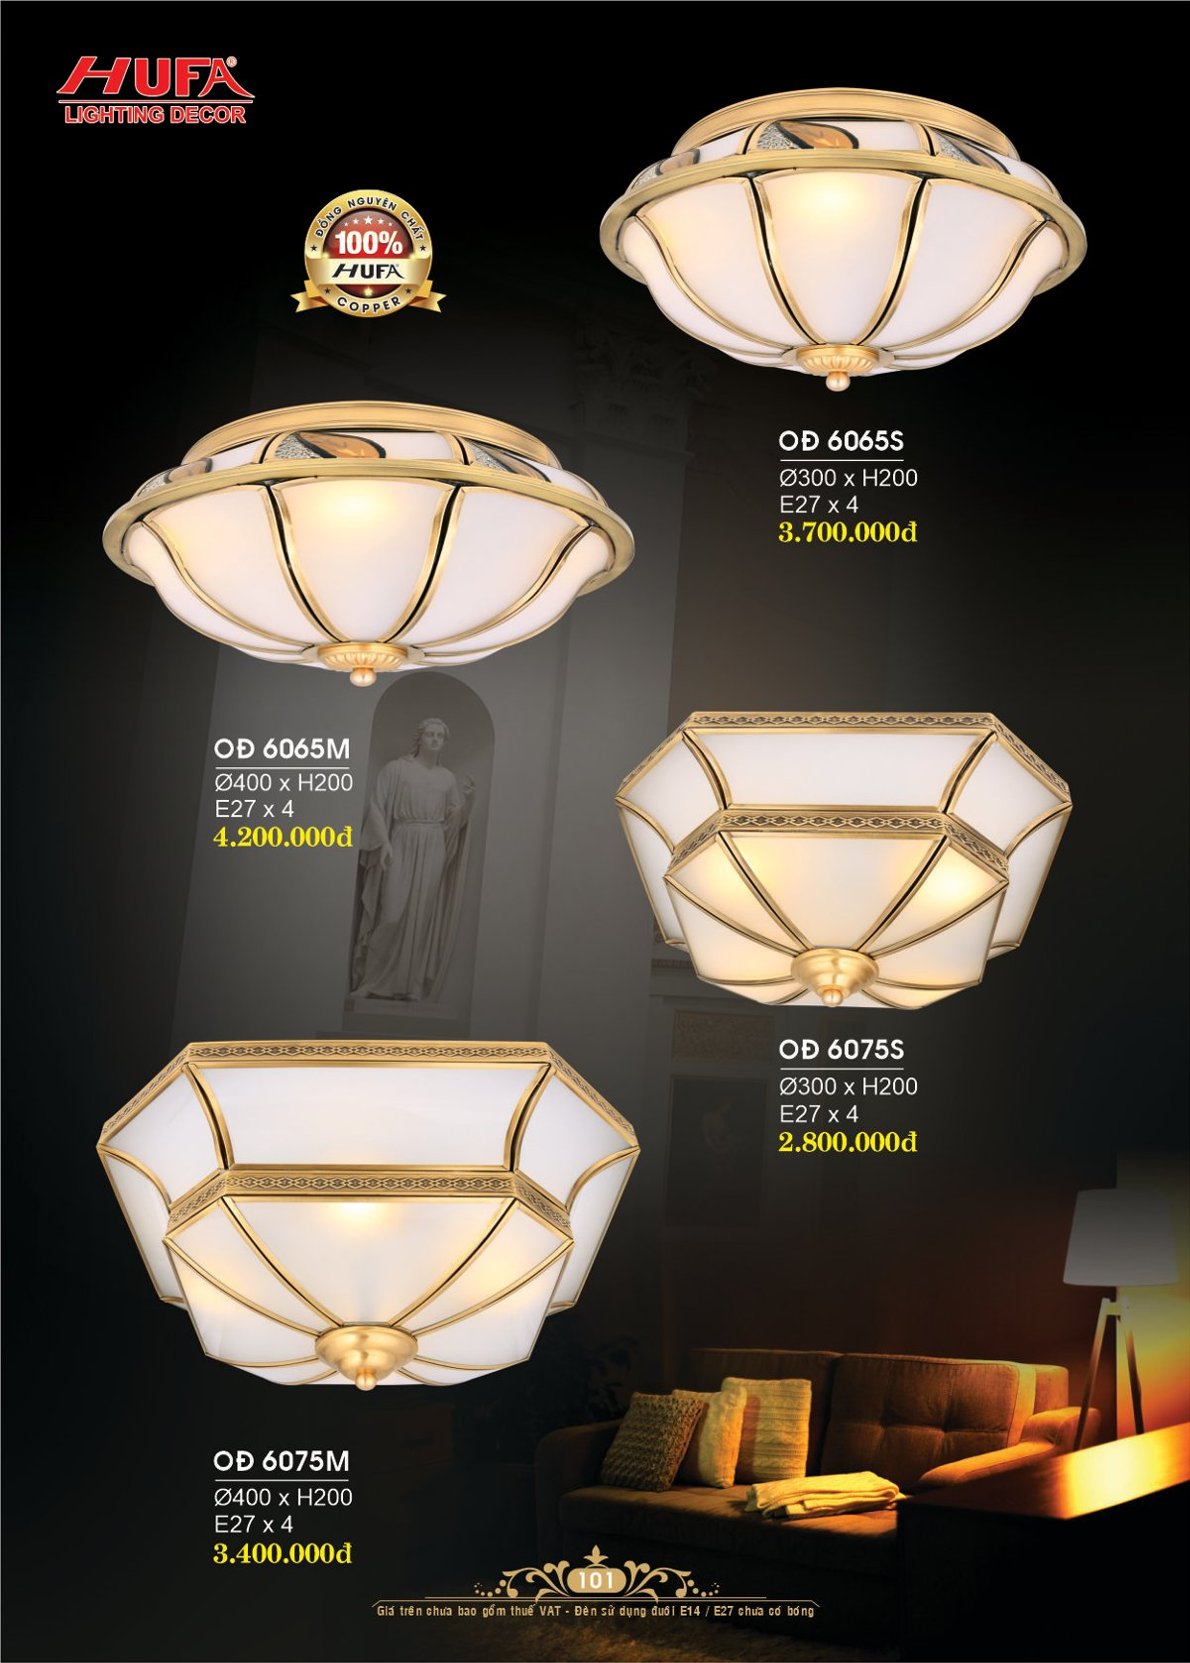 đèn trang trí Hufa OĐ 6075S, đèn ốp trần đồng, đèn trang trí, đèn trang trí cao cấp, hufa